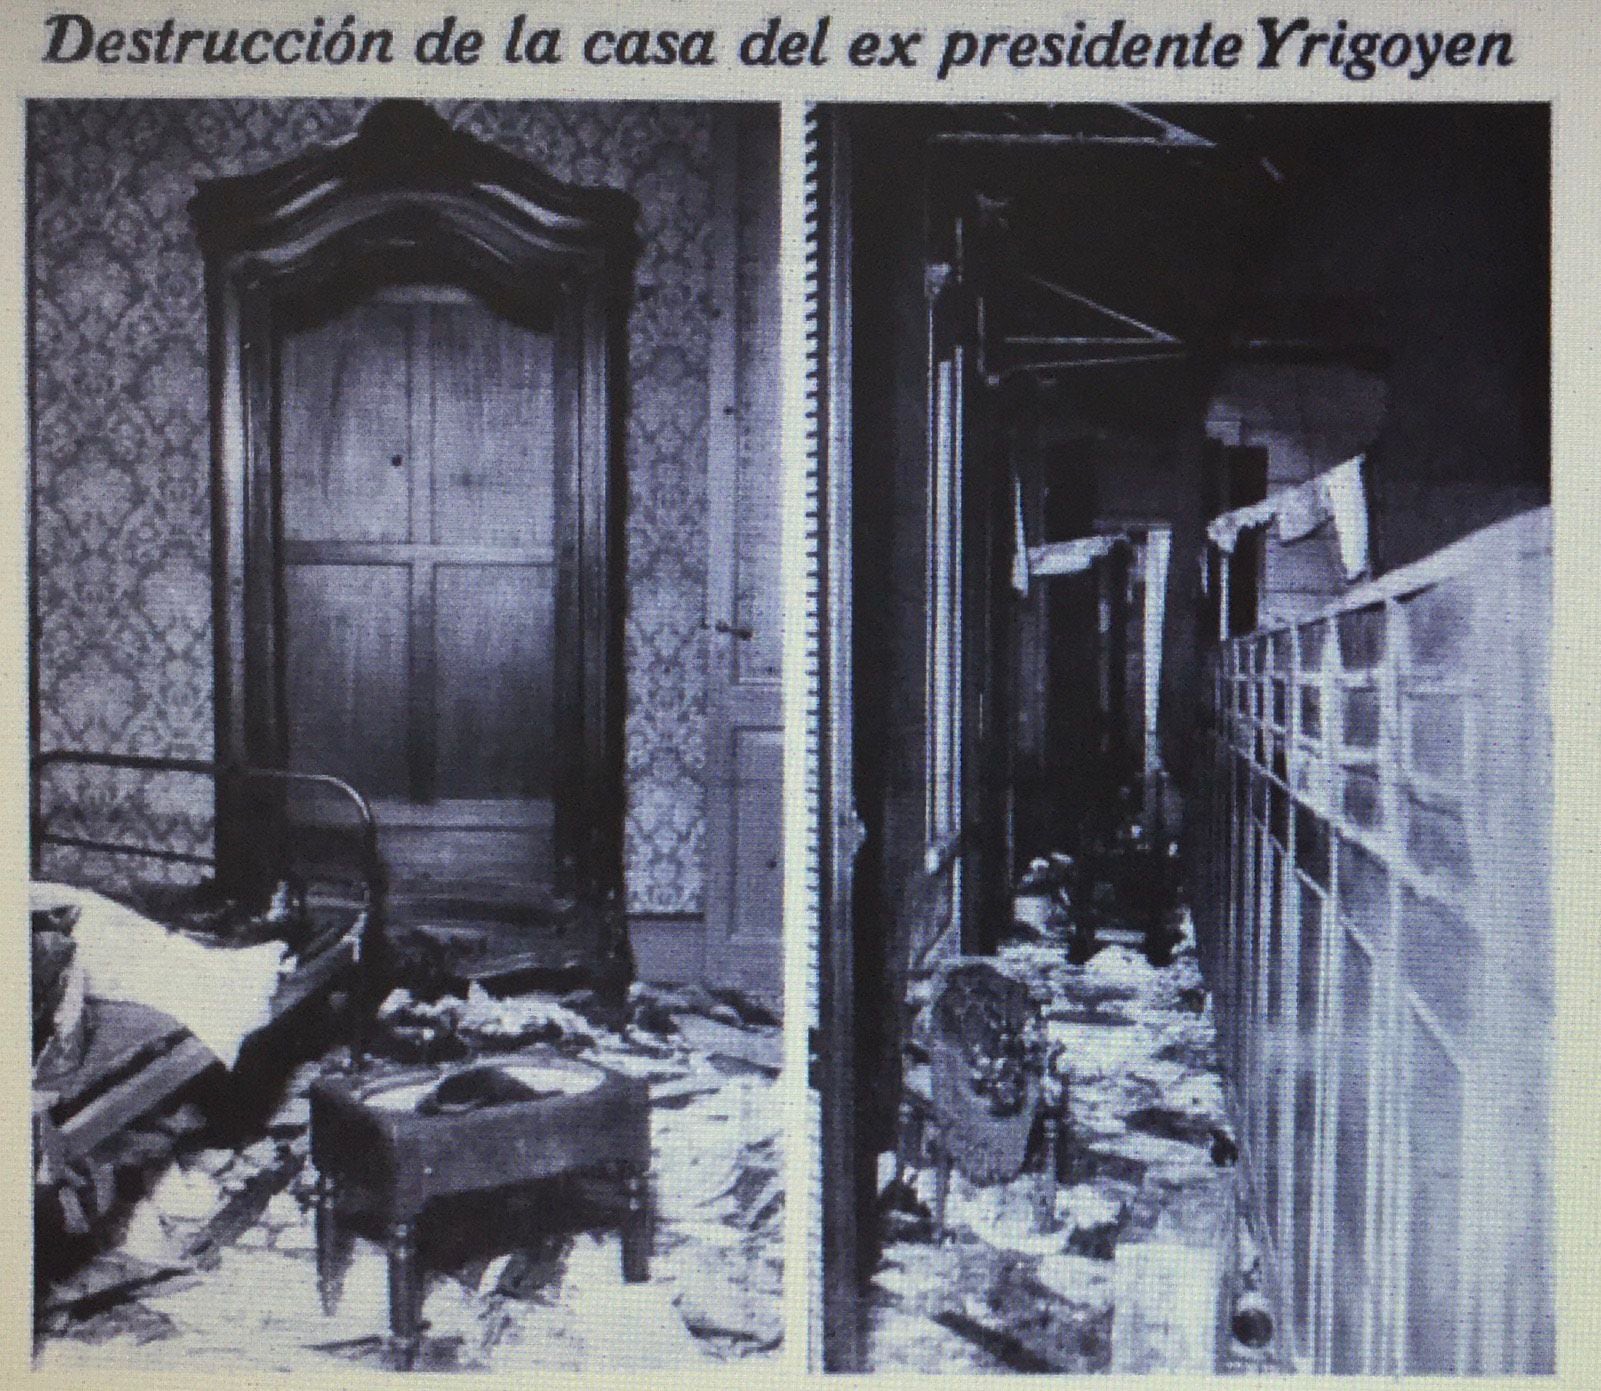 Estado en que quedó la casa de Yrigoyen, luego de ser asaltada y saqueada (Revista Caras y Caretas)